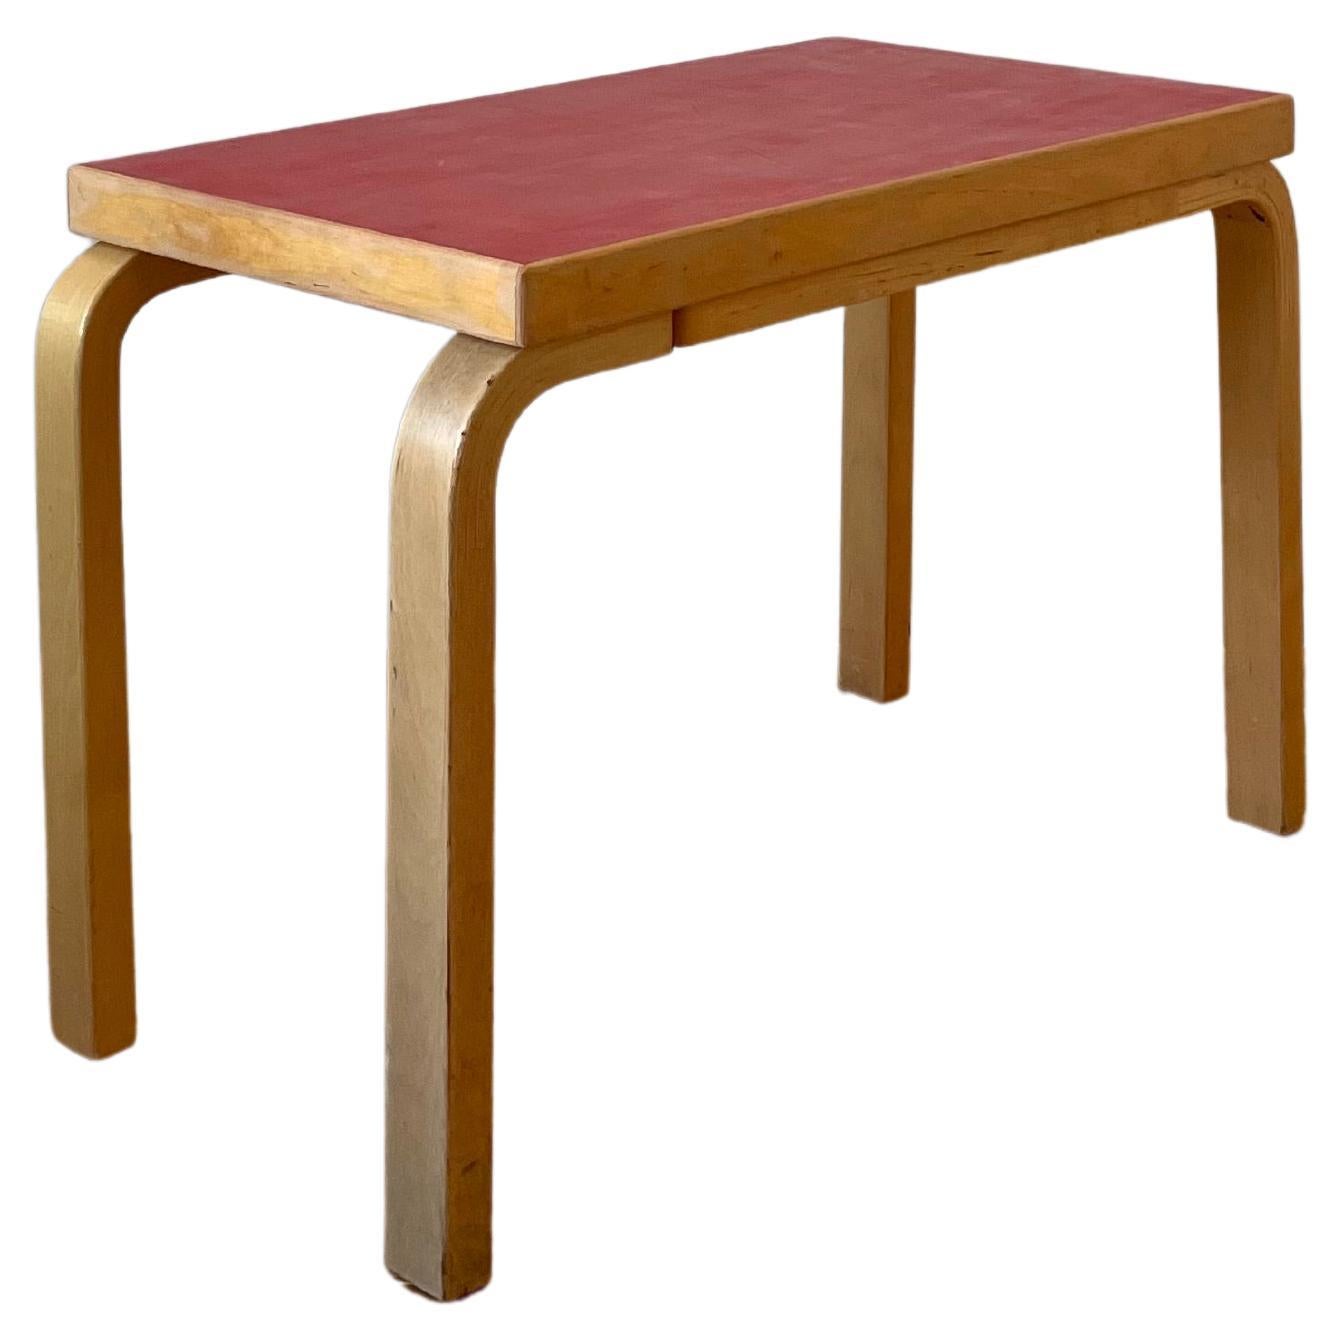 Vintage Side Table by Alvar Aalto for Artek